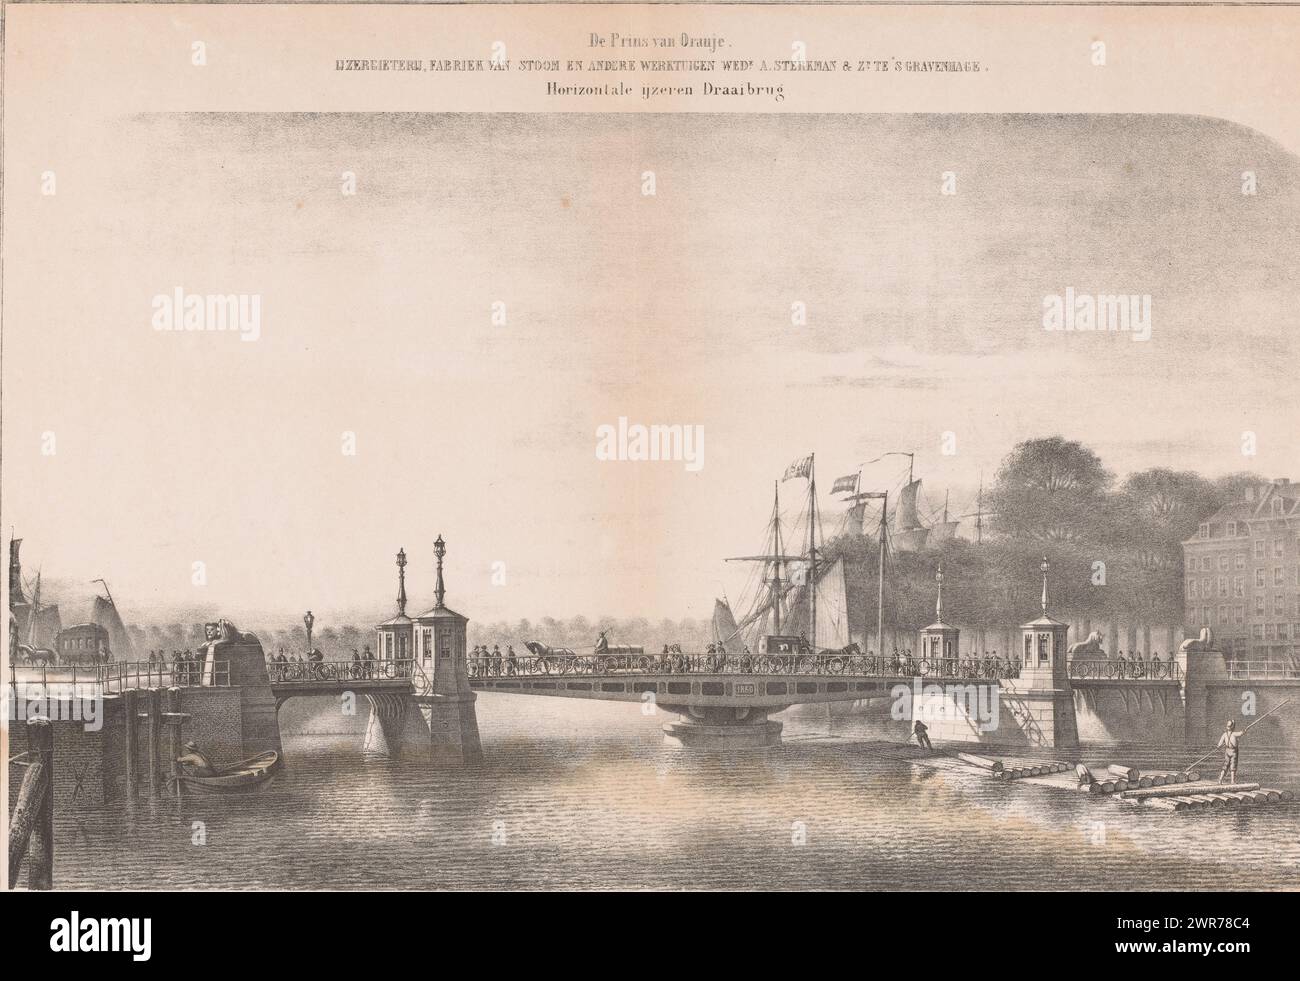 Koningsbrug à Rotterdam, les gens et les calèches marchent et conduisent sur le pont tournant en fer. Sur la droite, deux personnages naviguent sous le pont sur des troncs d’arbres. A gauche et à droite, les mâts des voiliers dépassent au-dessus de la cime des arbres. Numéroté en haut à droite : PL. 44., imprimeur : Matthijs Willem Gerardus Michielsen, Rotterdam, 1861, papier, hauteur 415 mm × largeur 510 mm, tirage Banque D'Images